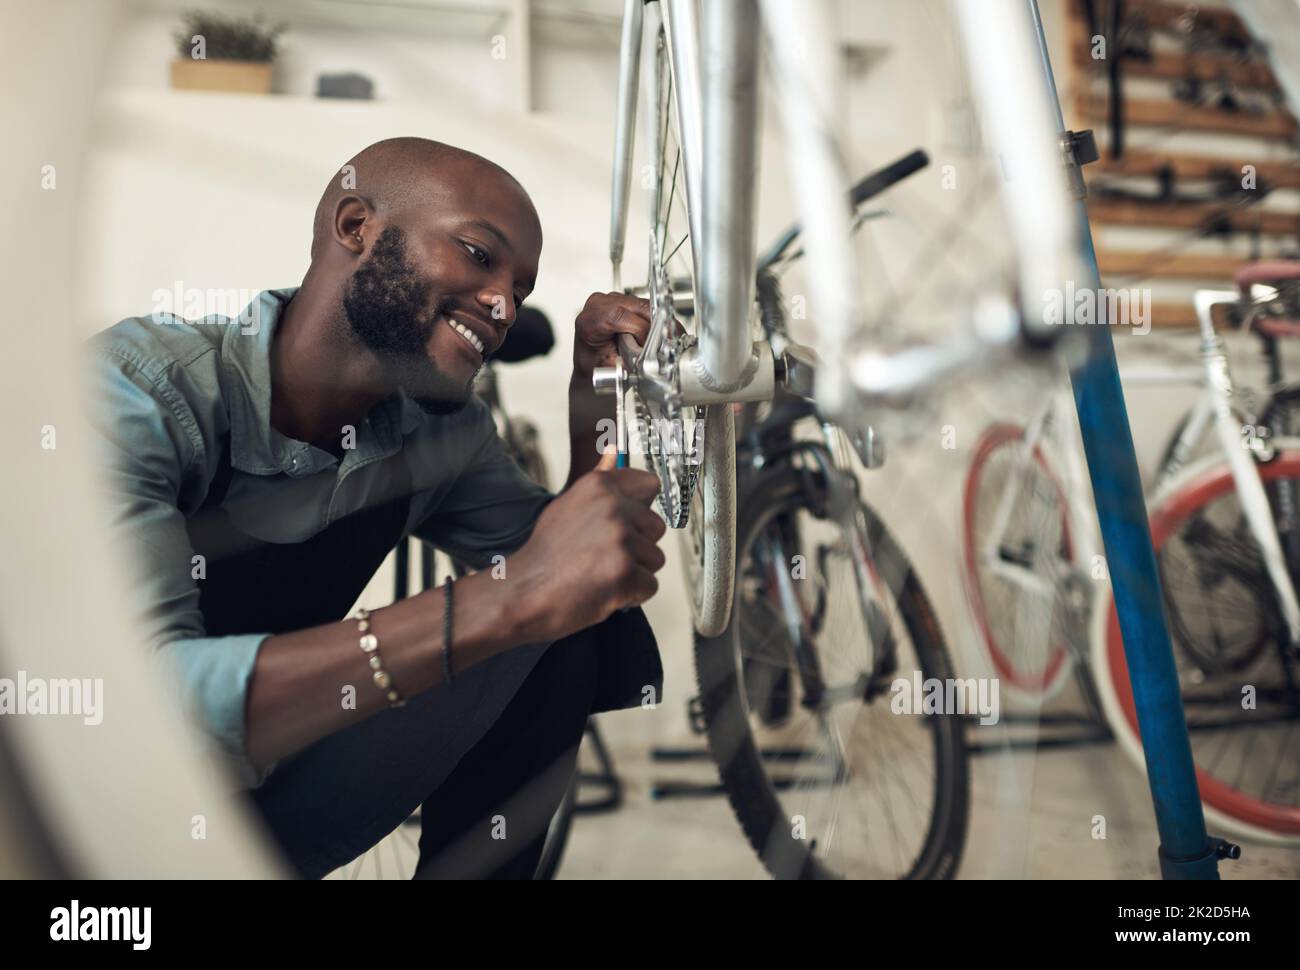 Im a presque fini de corriger cela. Photo d'un beau jeune homme qui s'est accroupi seul dans son atelier et a réparé une roue de vélo. Banque D'Images